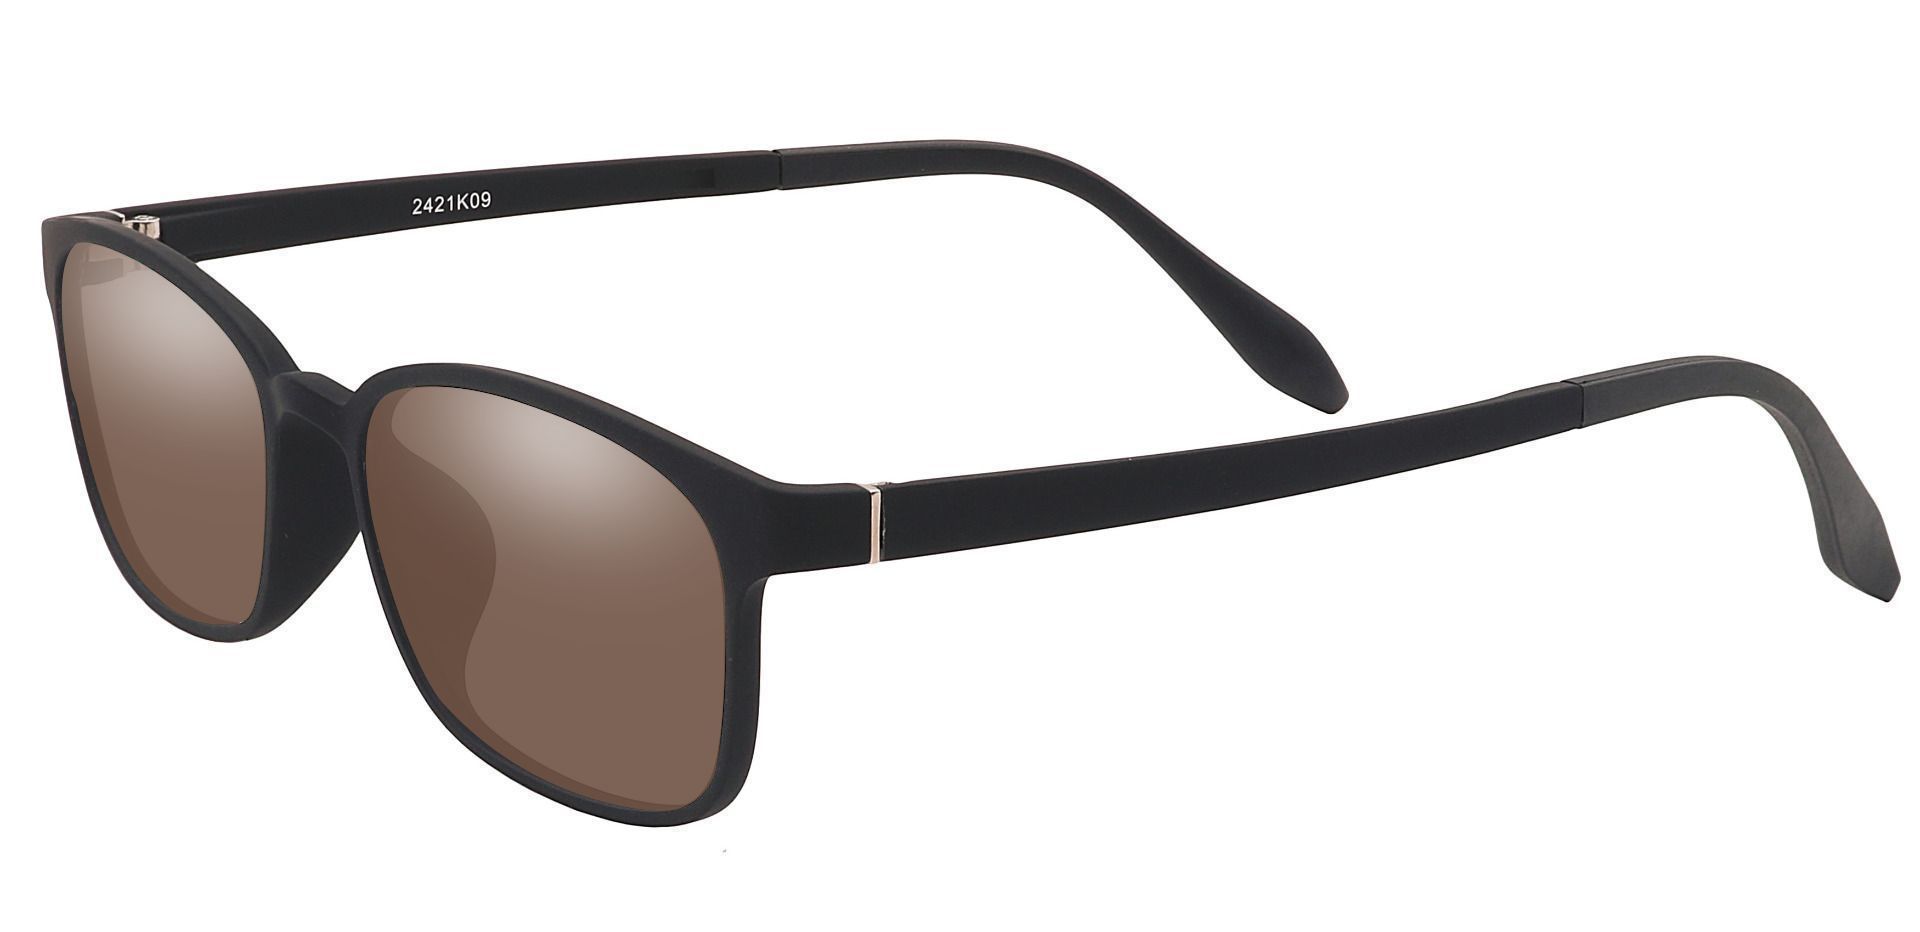 Mercer Rectangle Prescription Sunglasses -  Black Frame With Brown Lenses